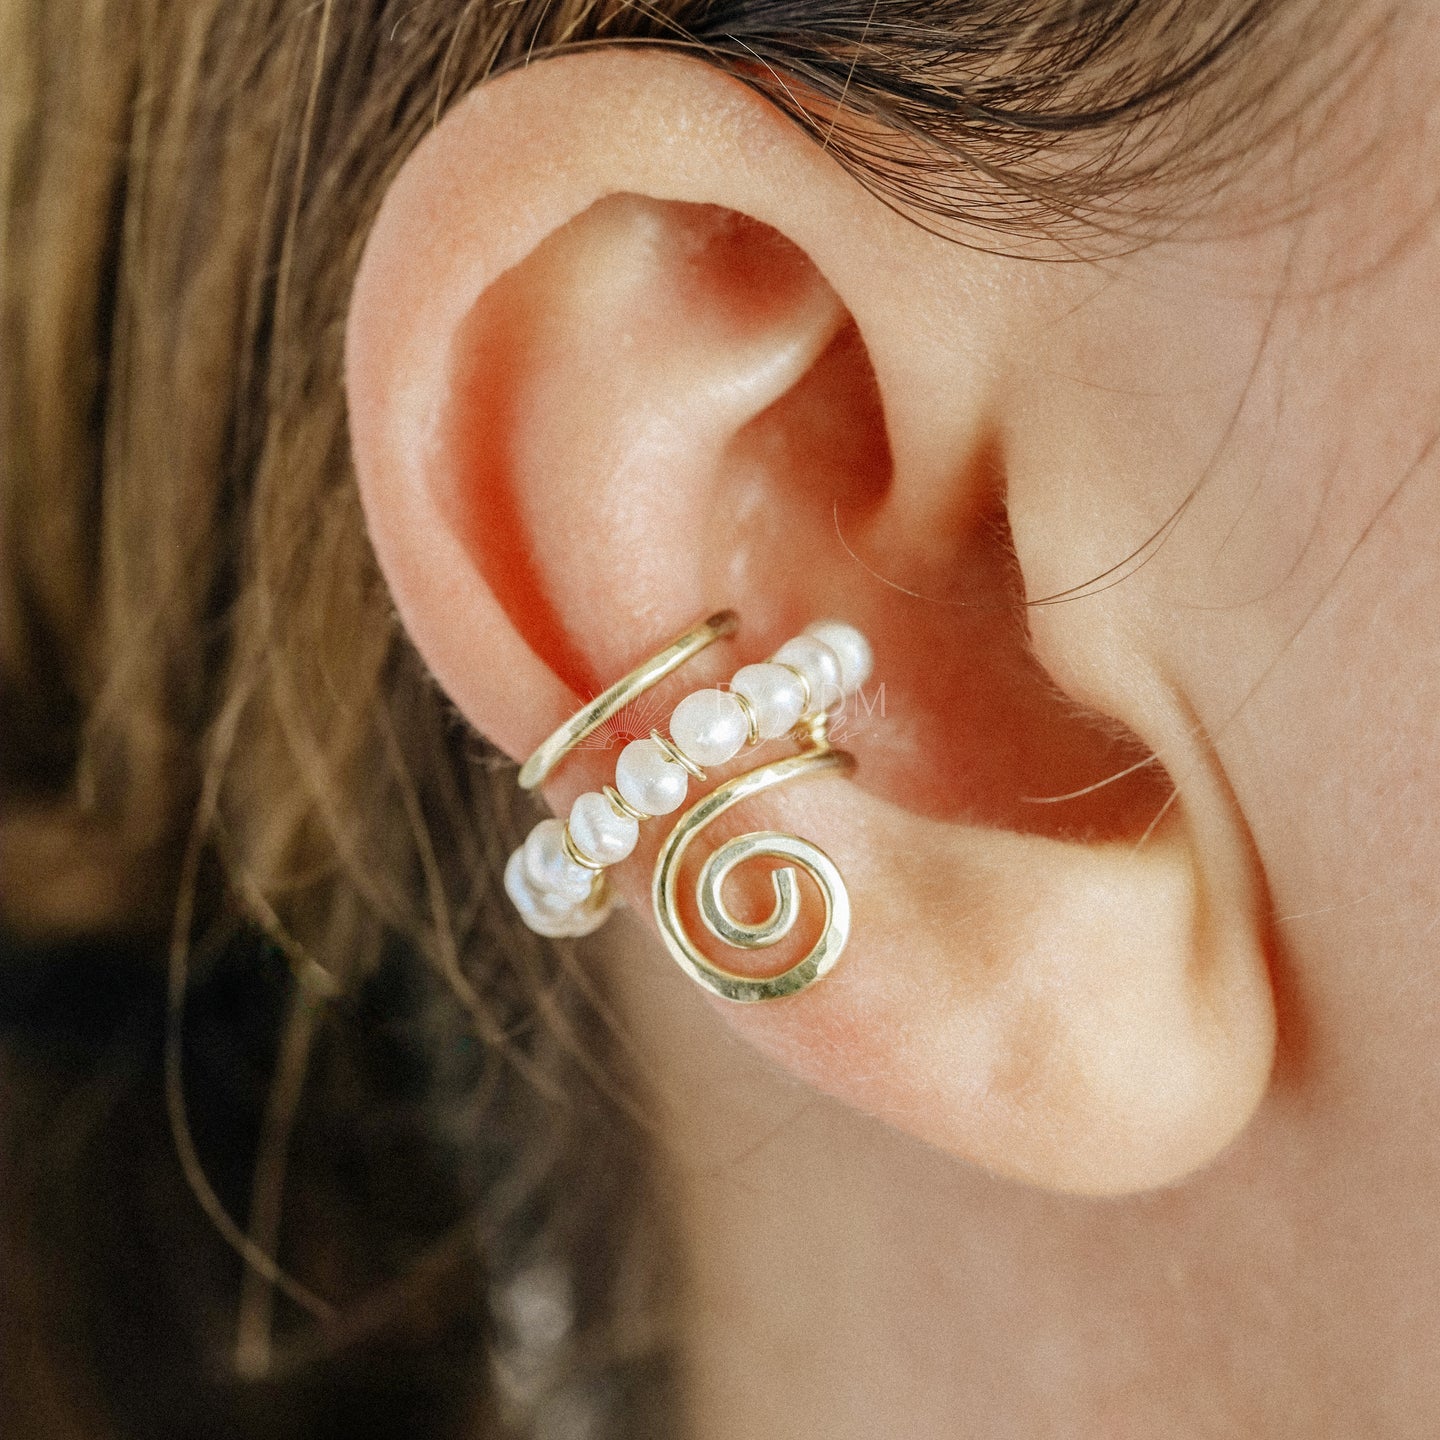 Pearl Ear Cuff • Gold Filled Pearl Jewelry • Faux Piercing • Trendy Jewelry • Ear Cuffs • Cute Jewelry • Gift Idea • Bride Jewelry